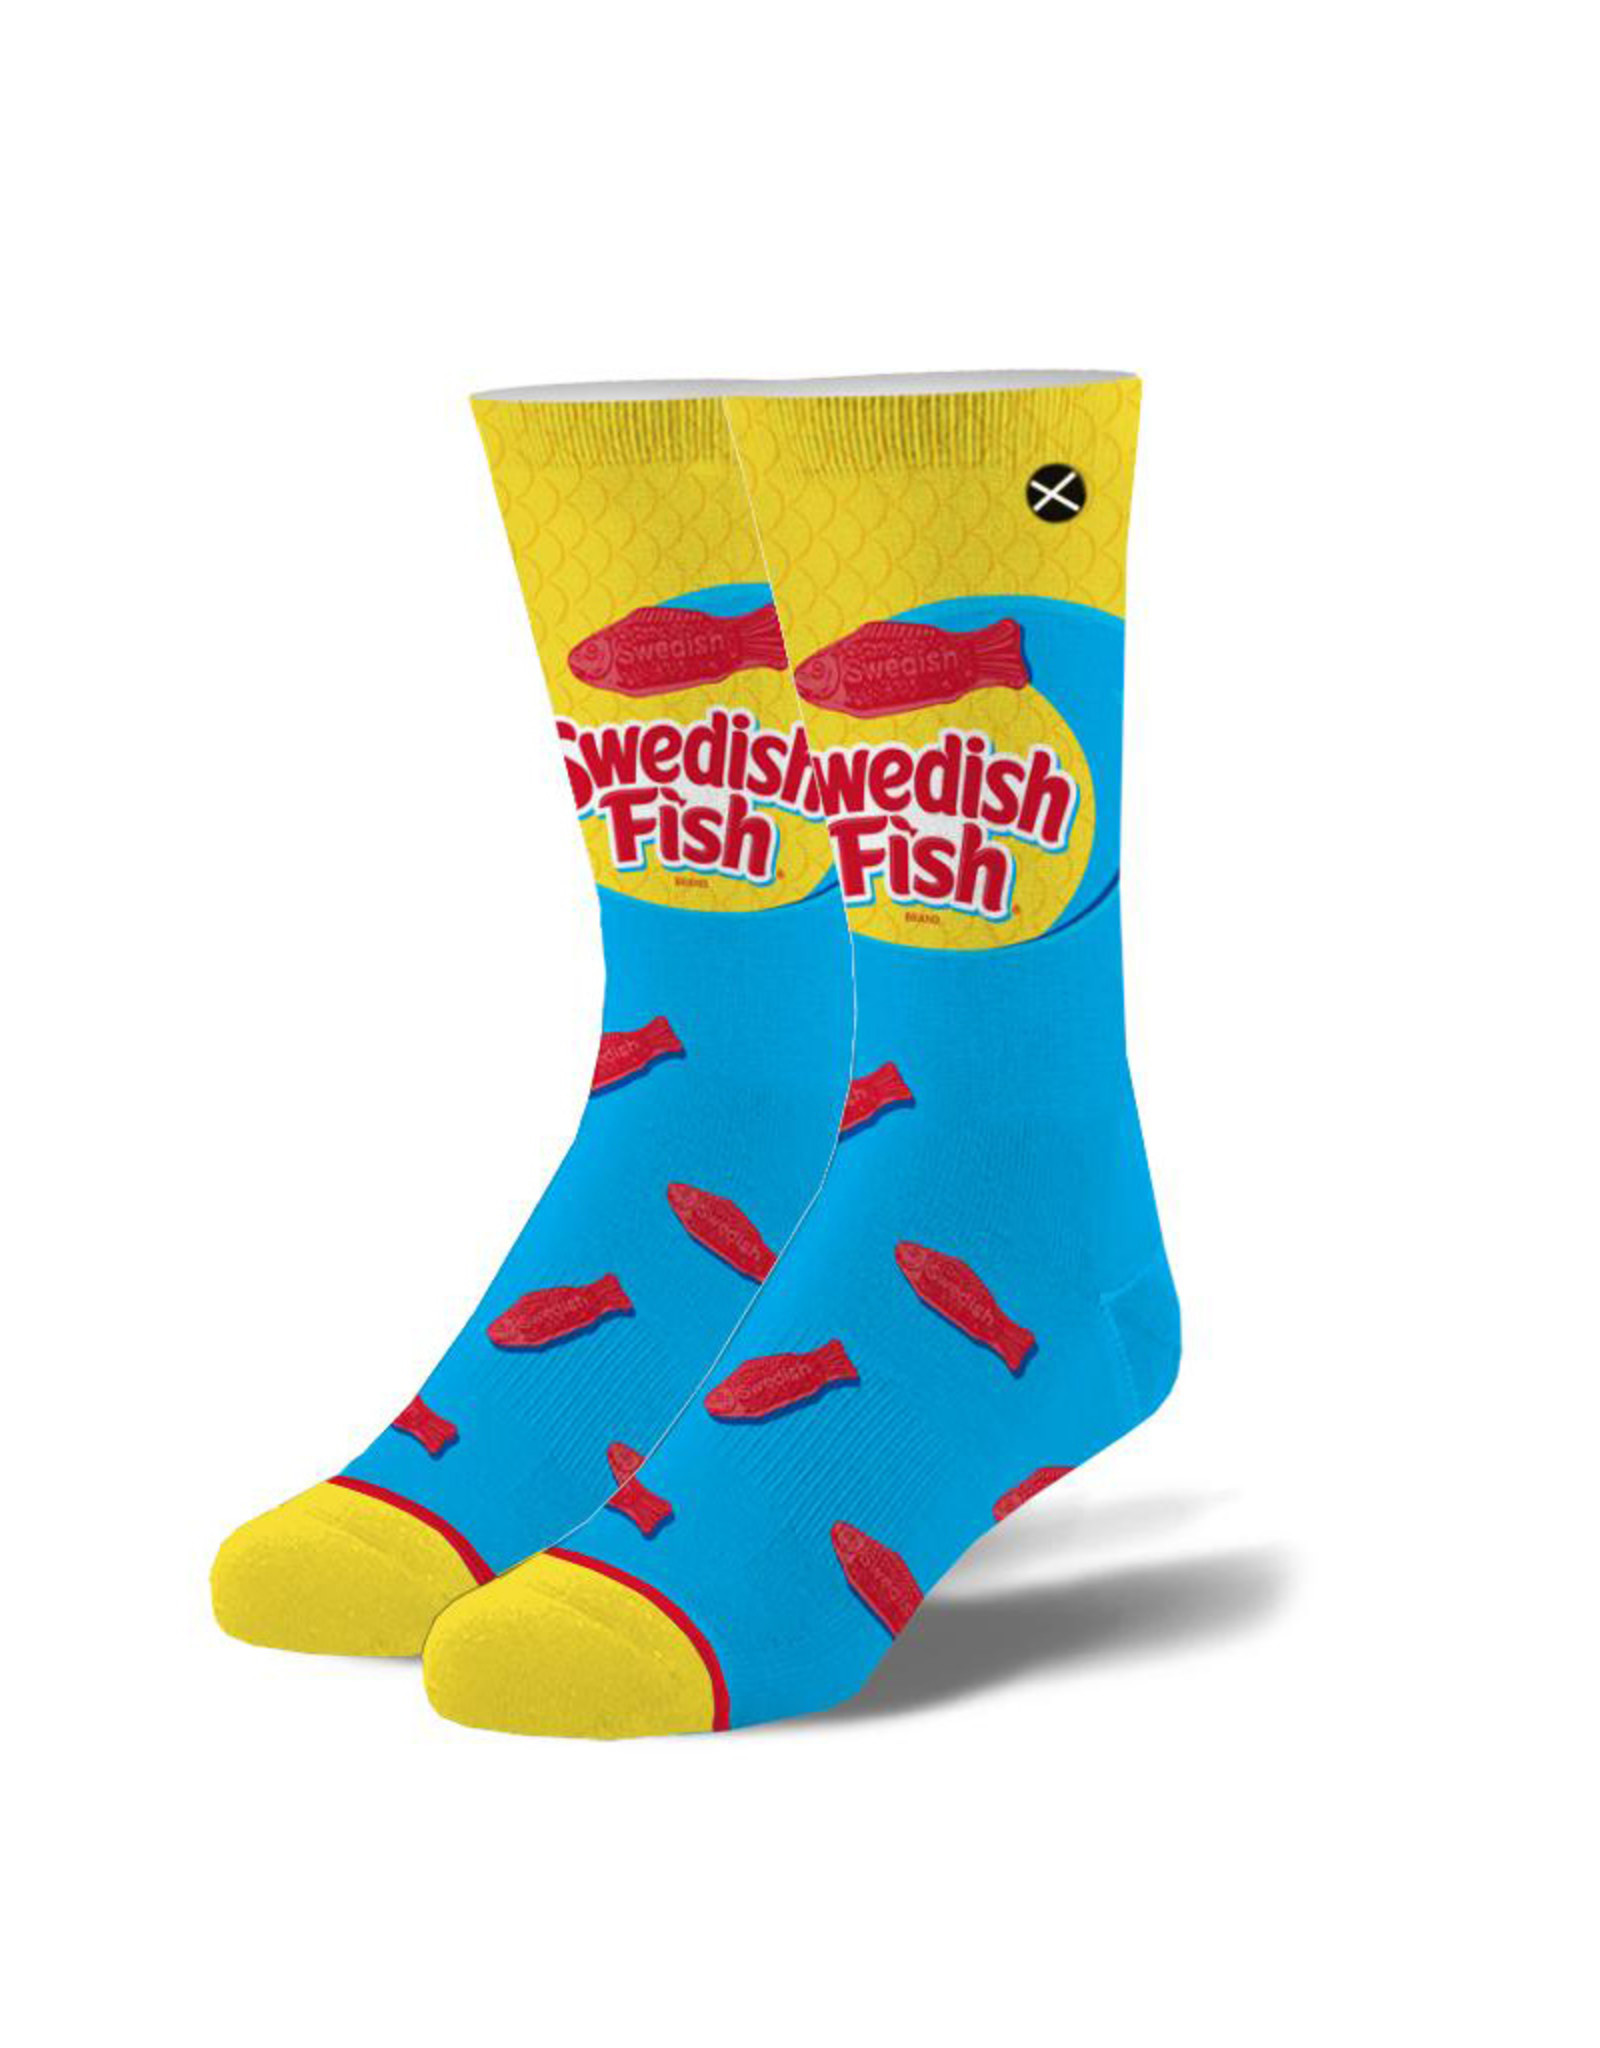 Odd Sox Odd Sox: Swedish Fish Socks